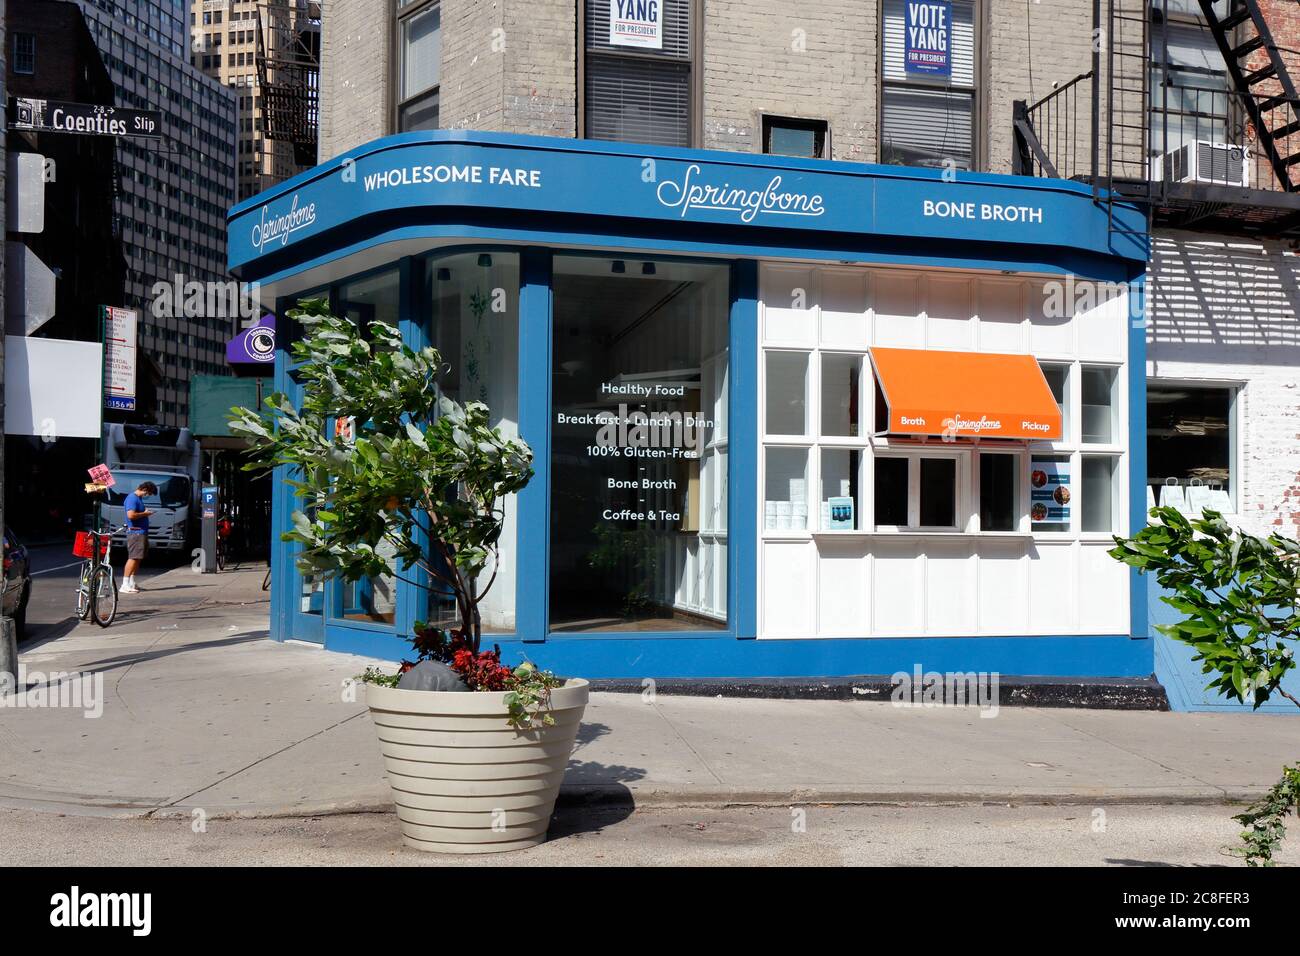 Springbone Kitchen, 74 Pearl St, New York, NYC foto del negozio di un ristorante senza glutine e paleo nel quartiere finanziario di Manhattan. Foto Stock